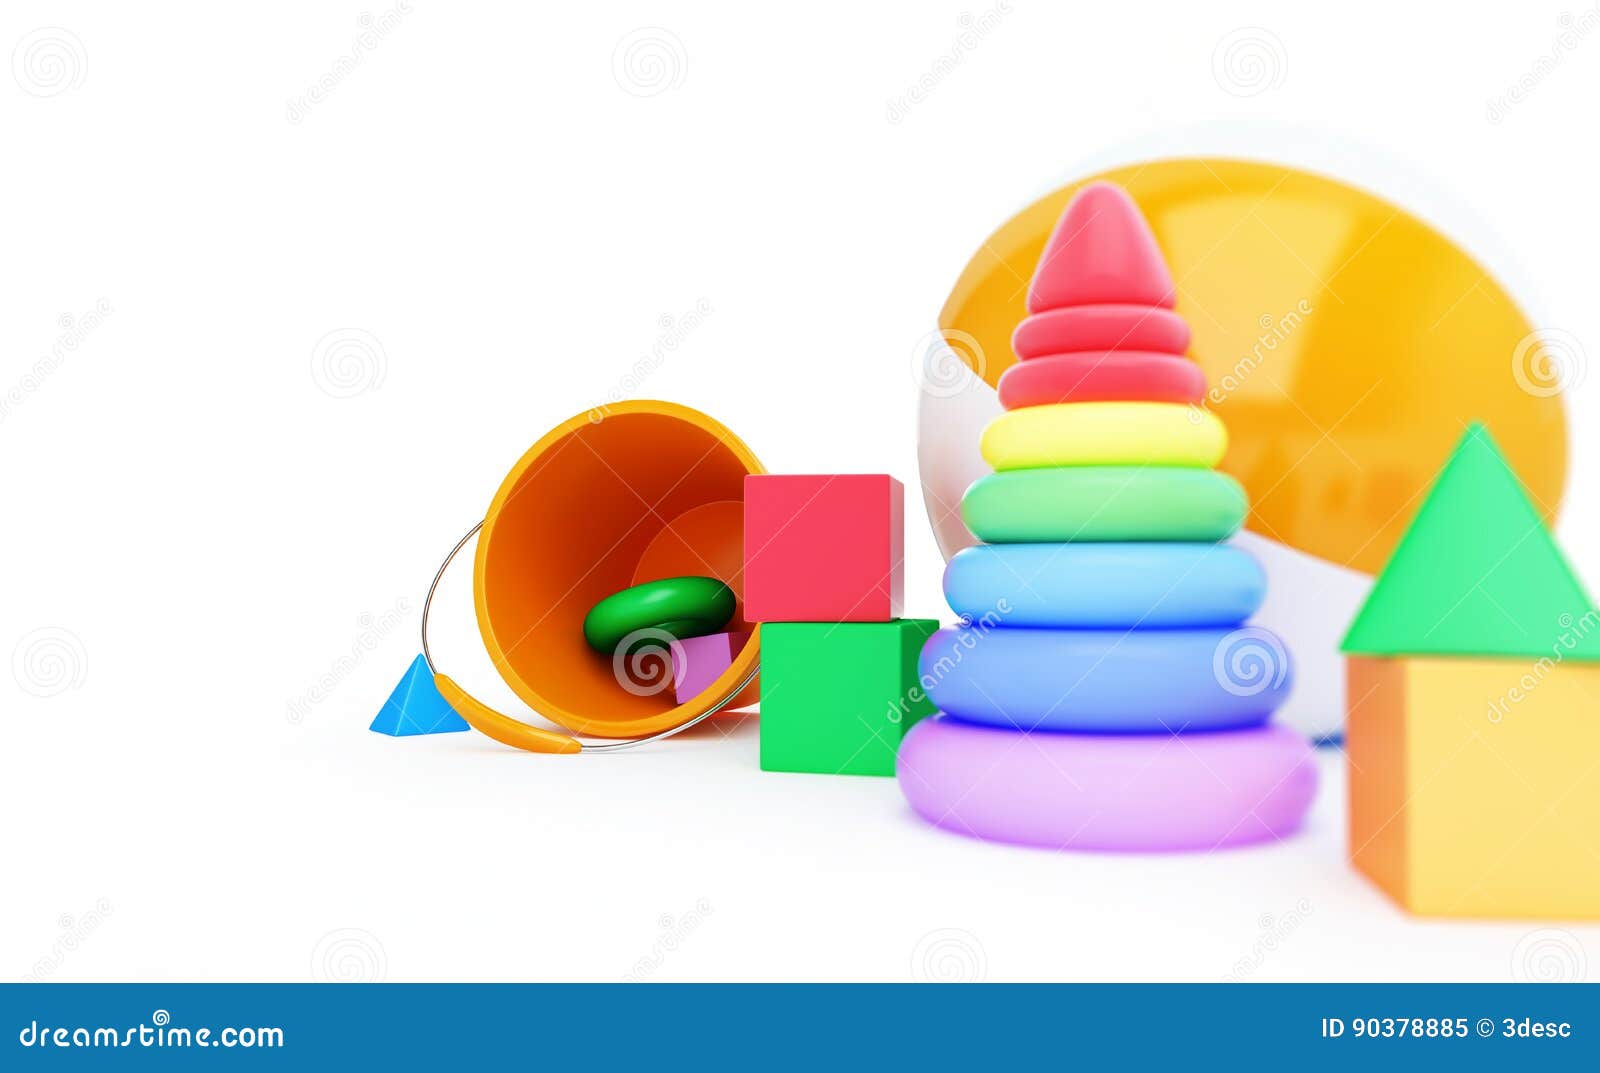 toys alphabet cube, beach ball, pyramid 3d 